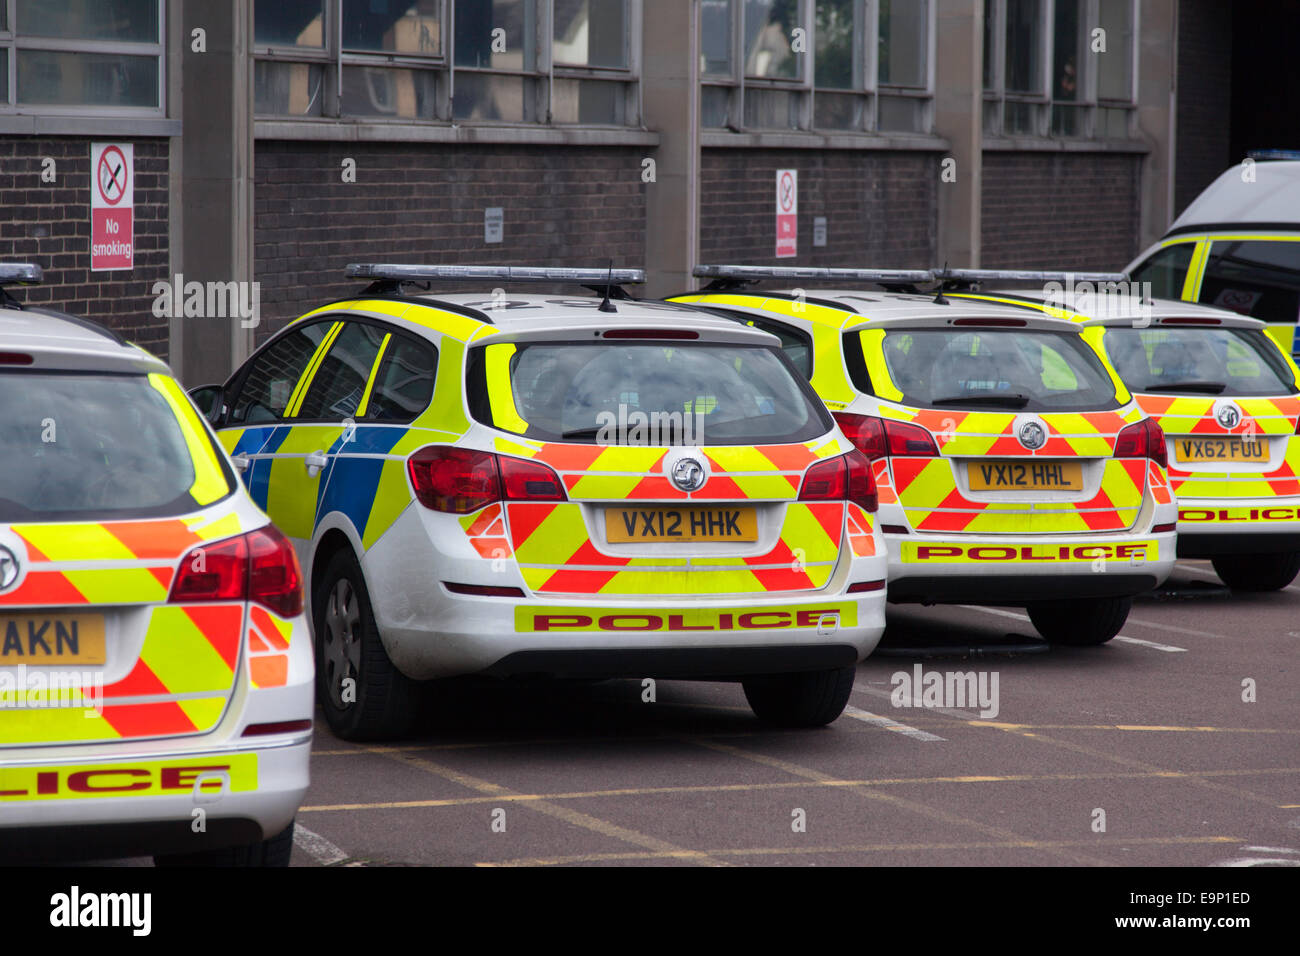 Geparkten Polizeiwagen auf einer Polizeistation, England, UK Stockfoto